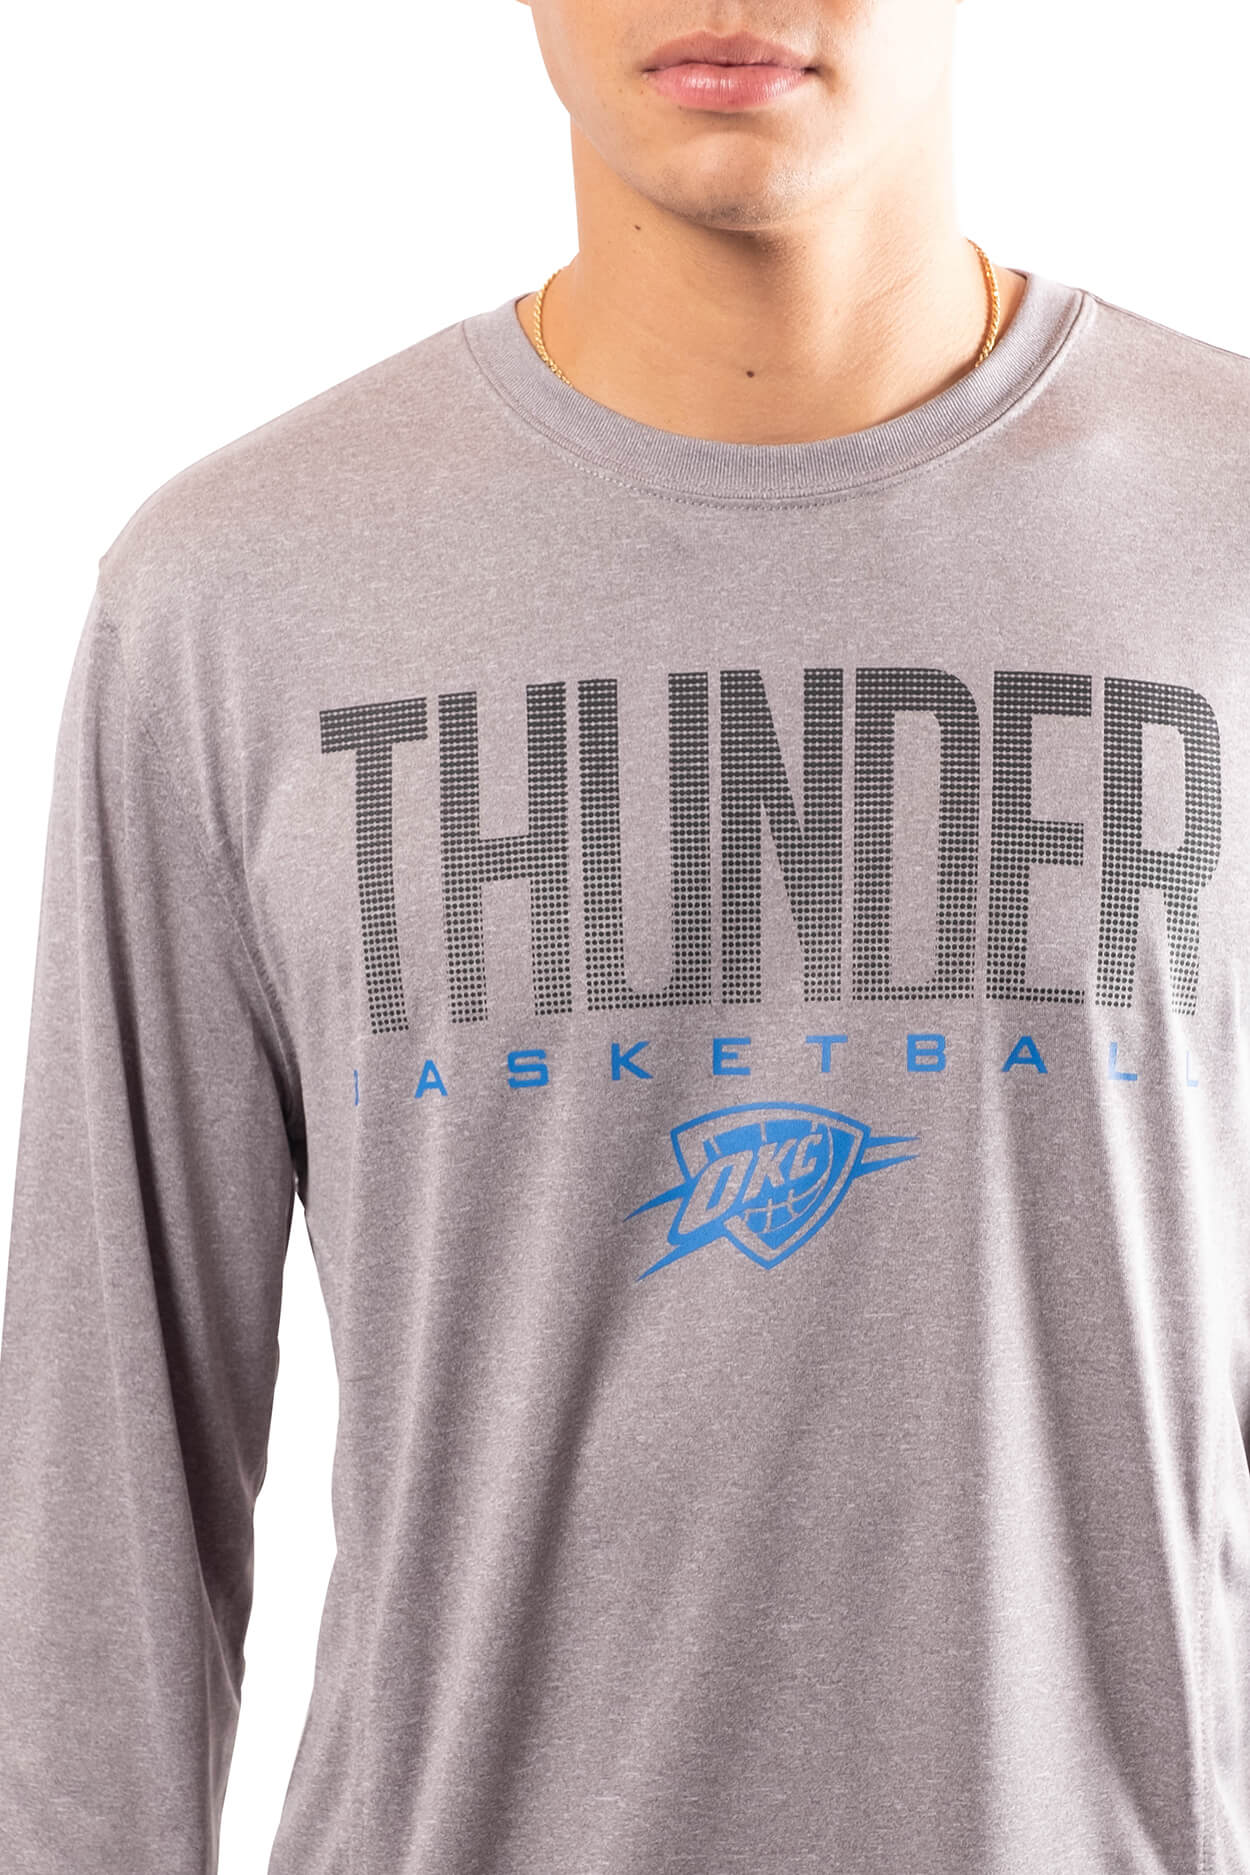 NBA Oklahoma City Thunder Men's Long Sleeve Tee|Oklahoma City Thunder